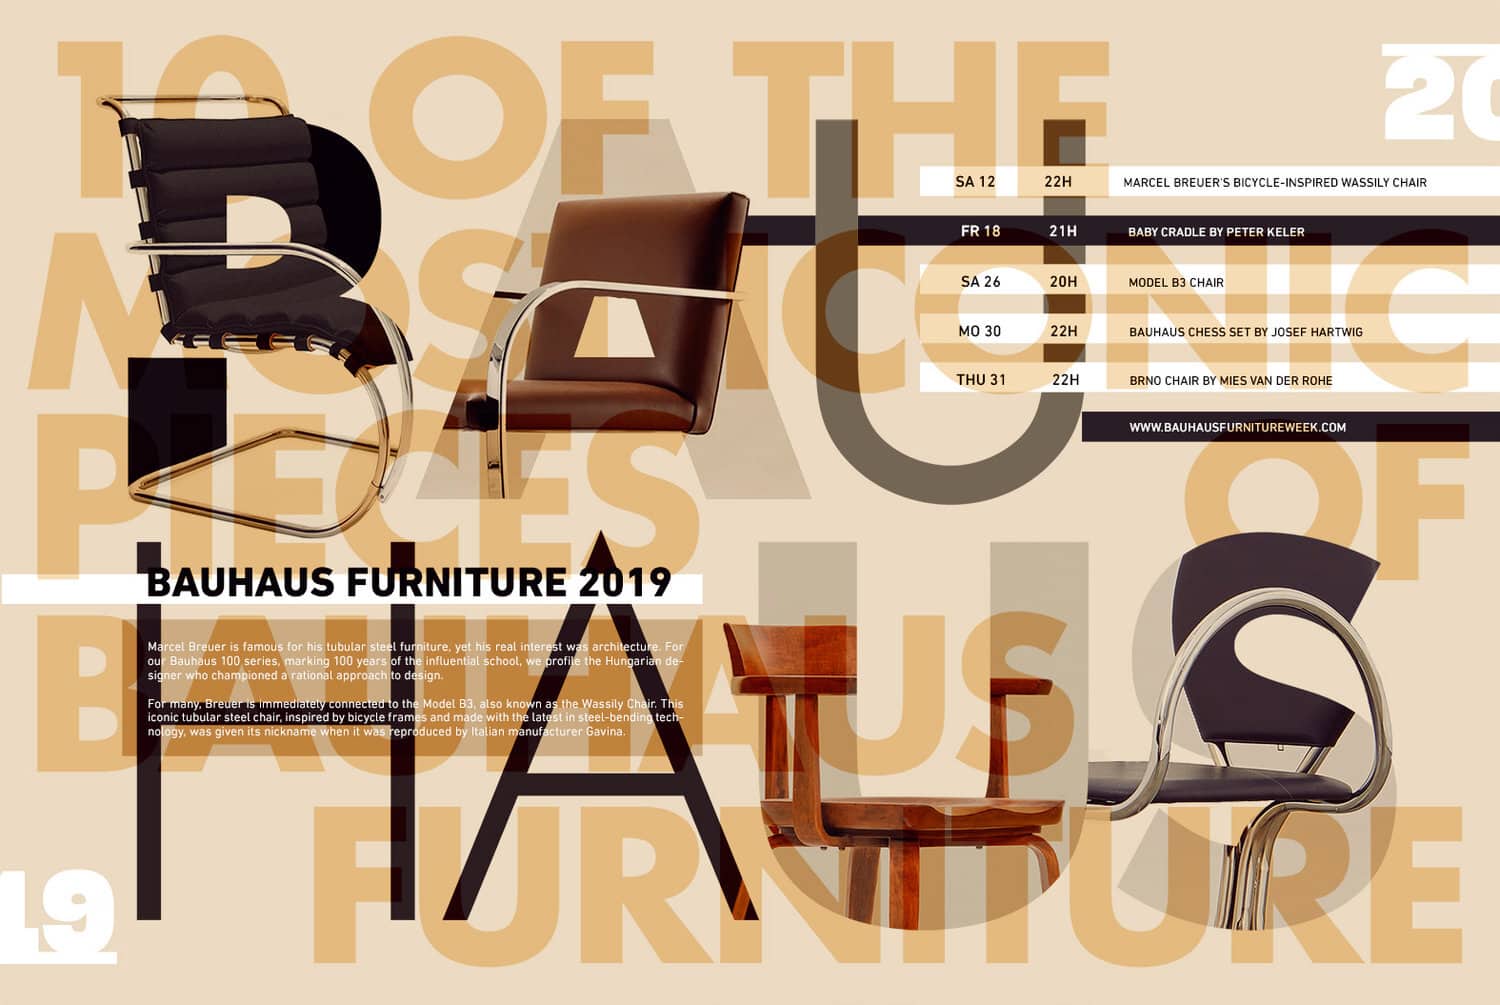 Bauhaus Furniture 2019